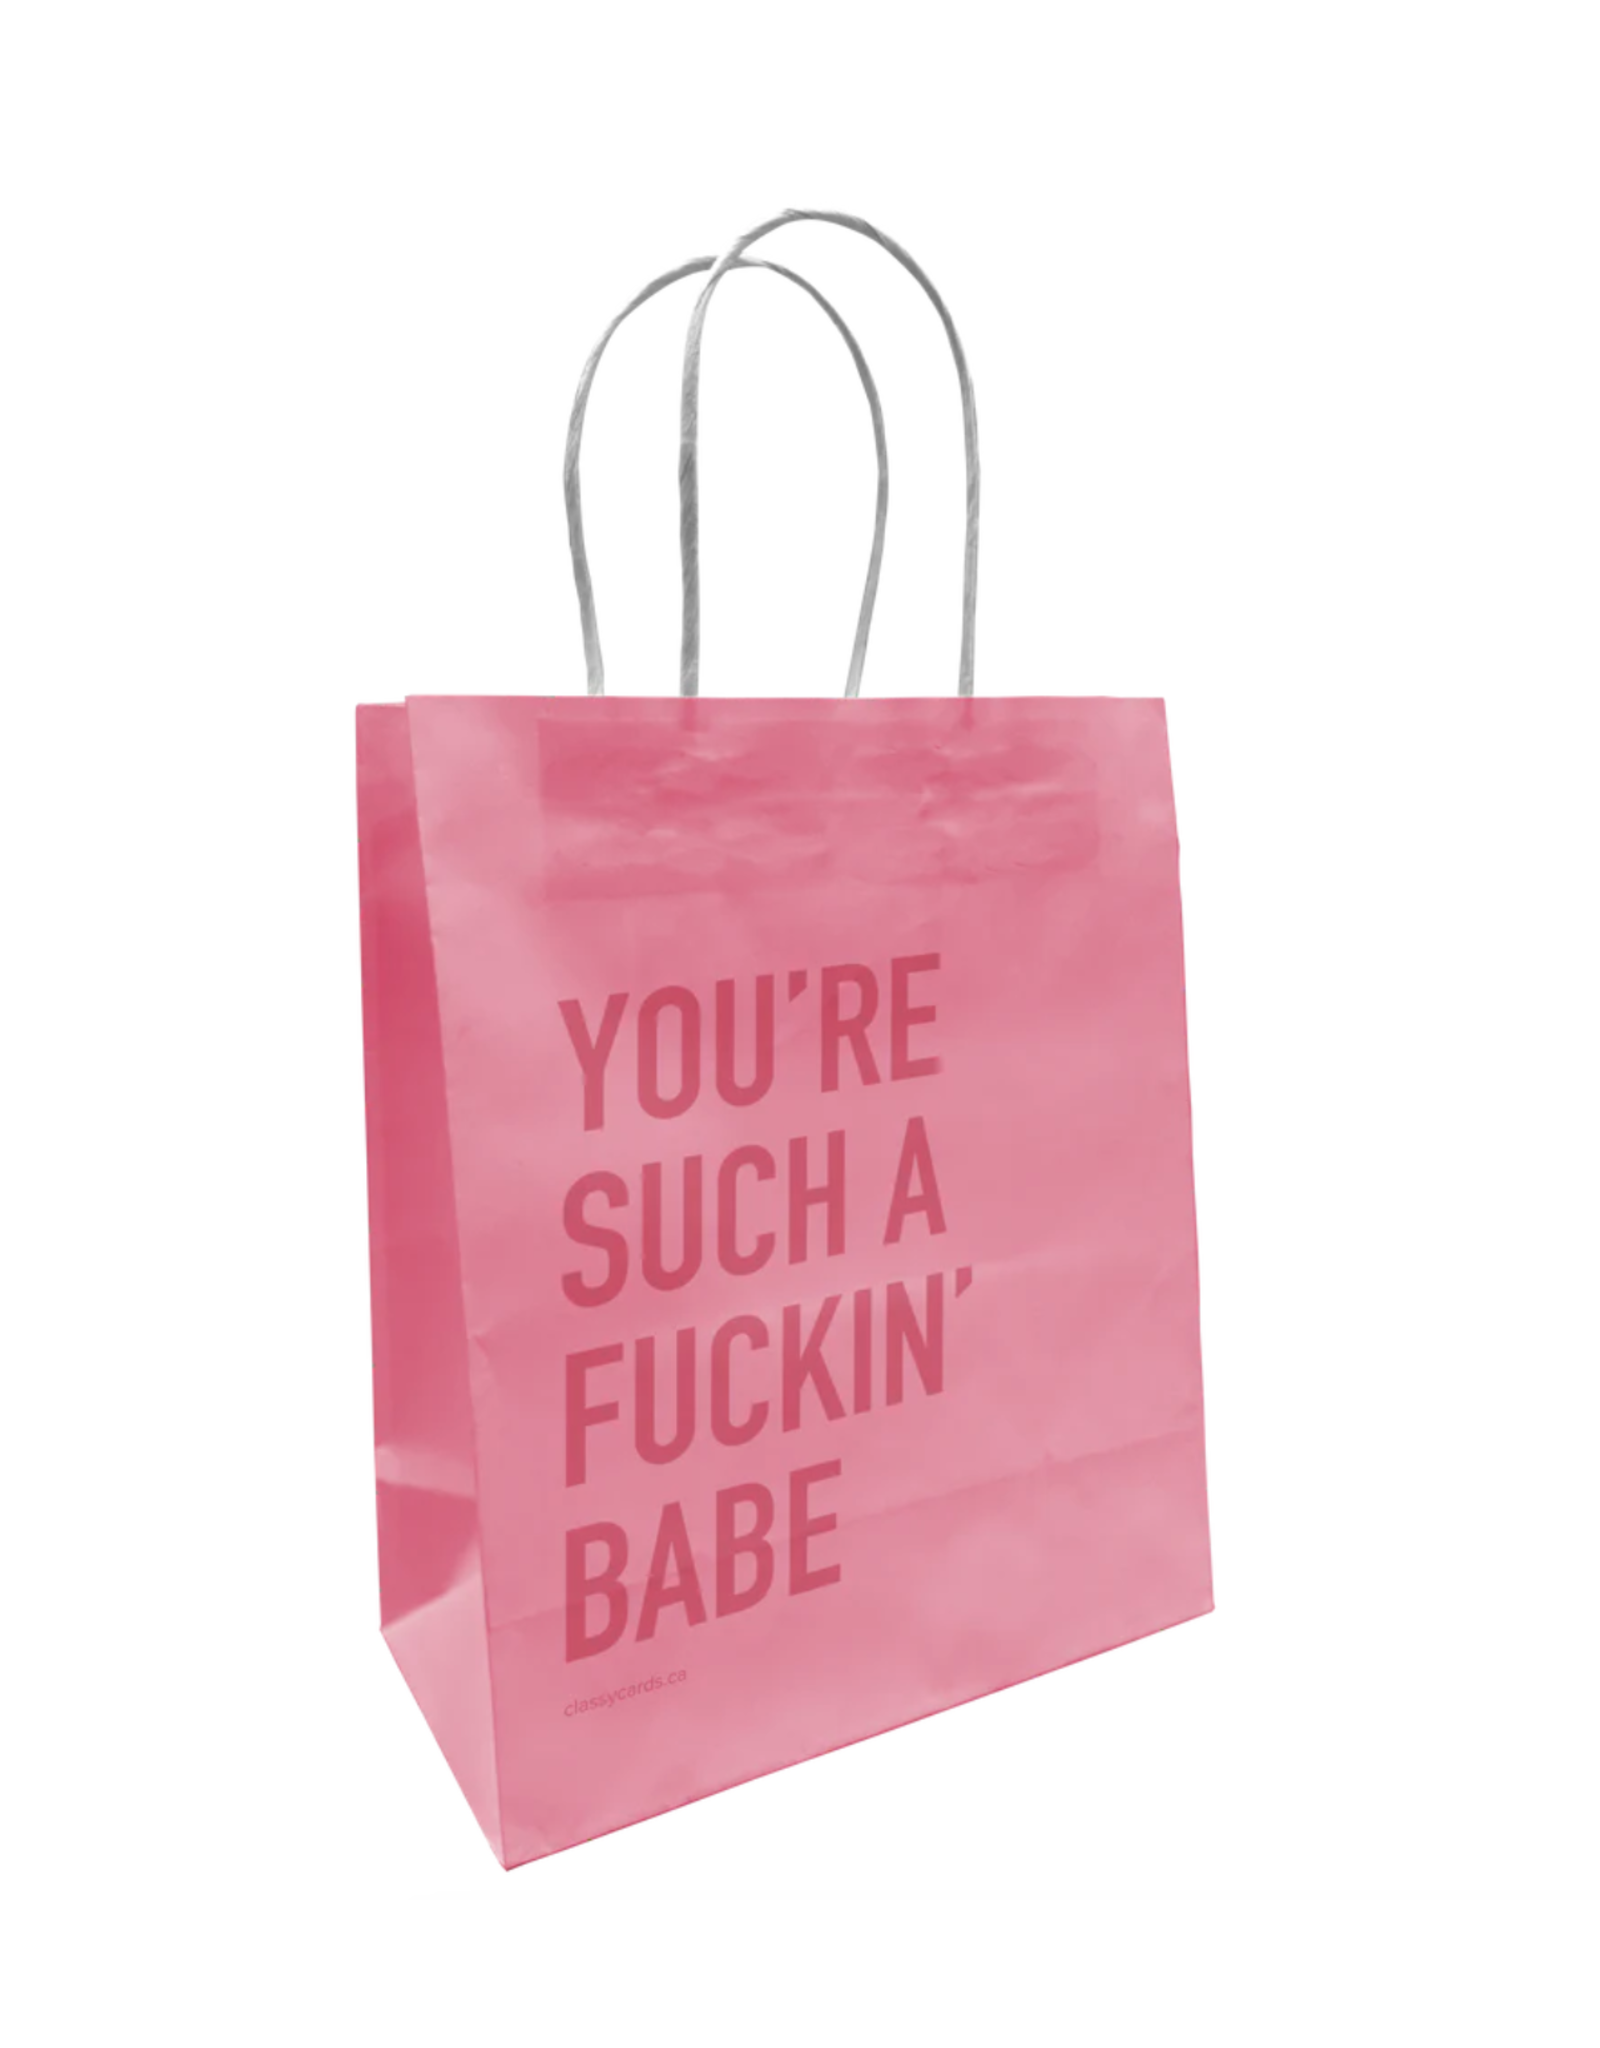 Fuckin' Babe Gift Bag